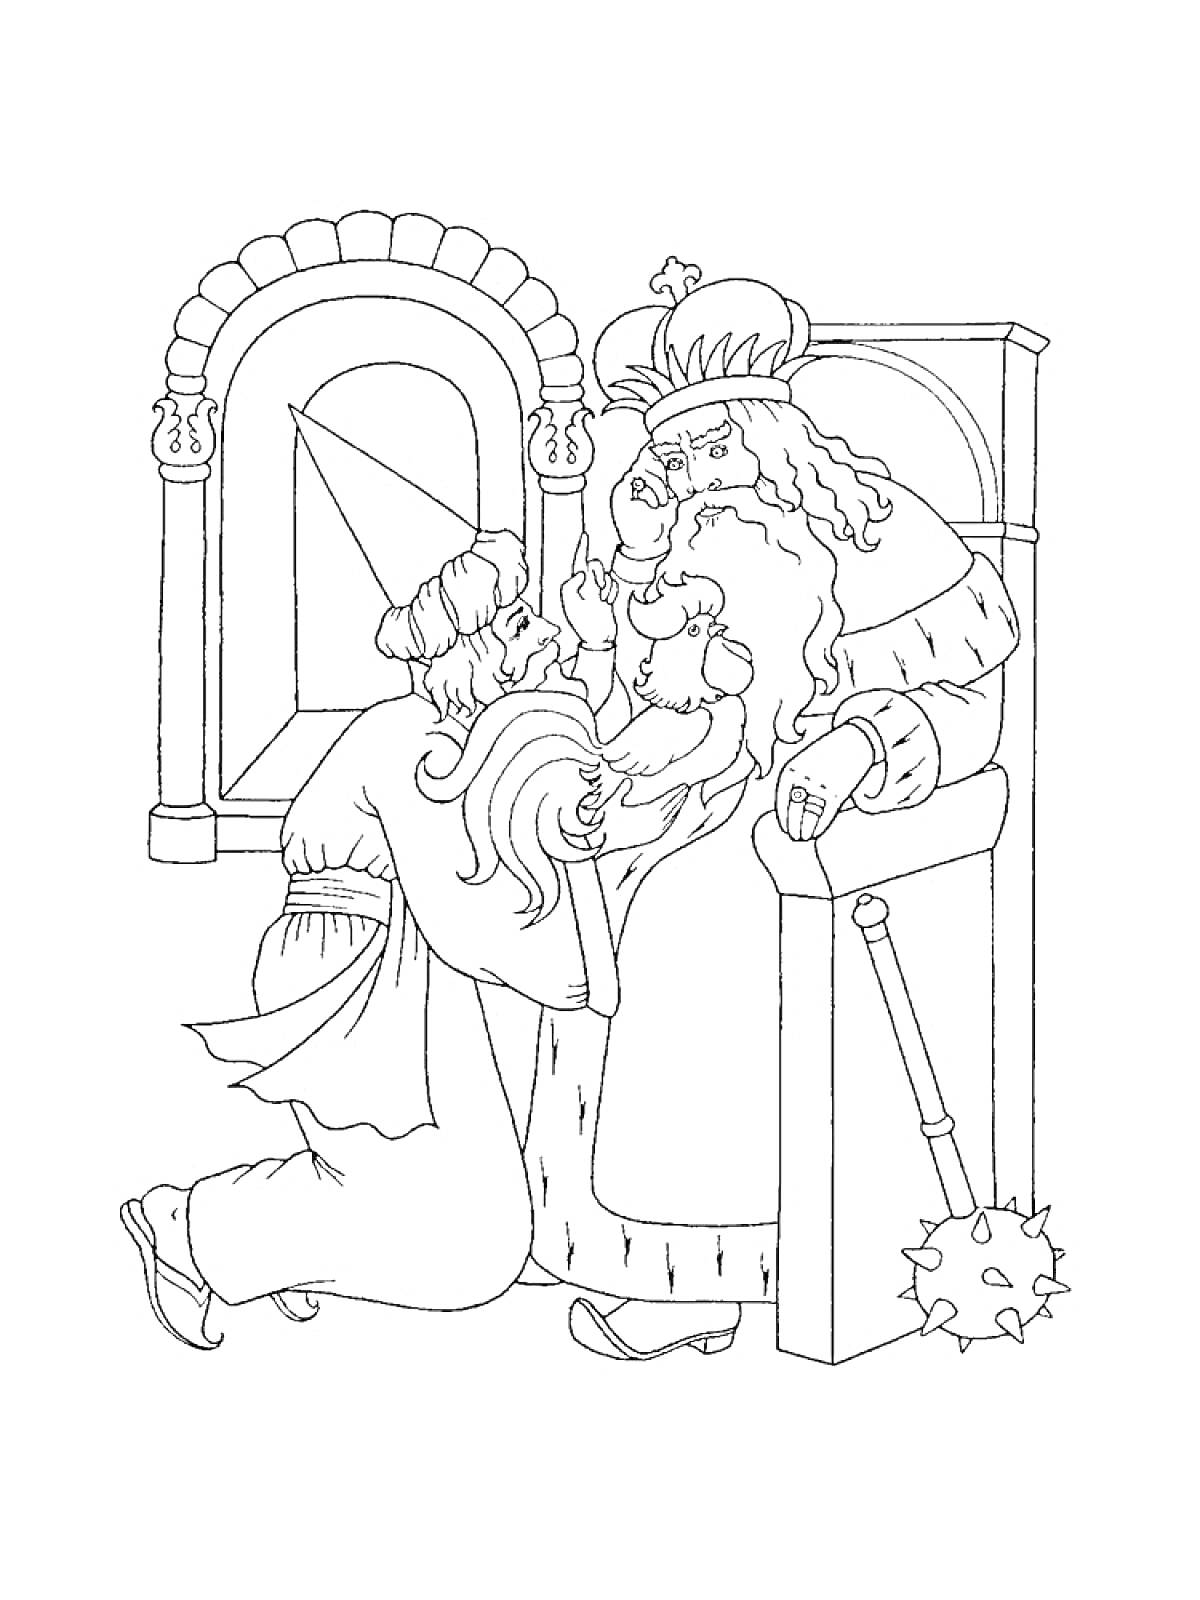 Король на троне, человек в плаще с золотым петушком на руках, окно и дверной проем на заднем плане